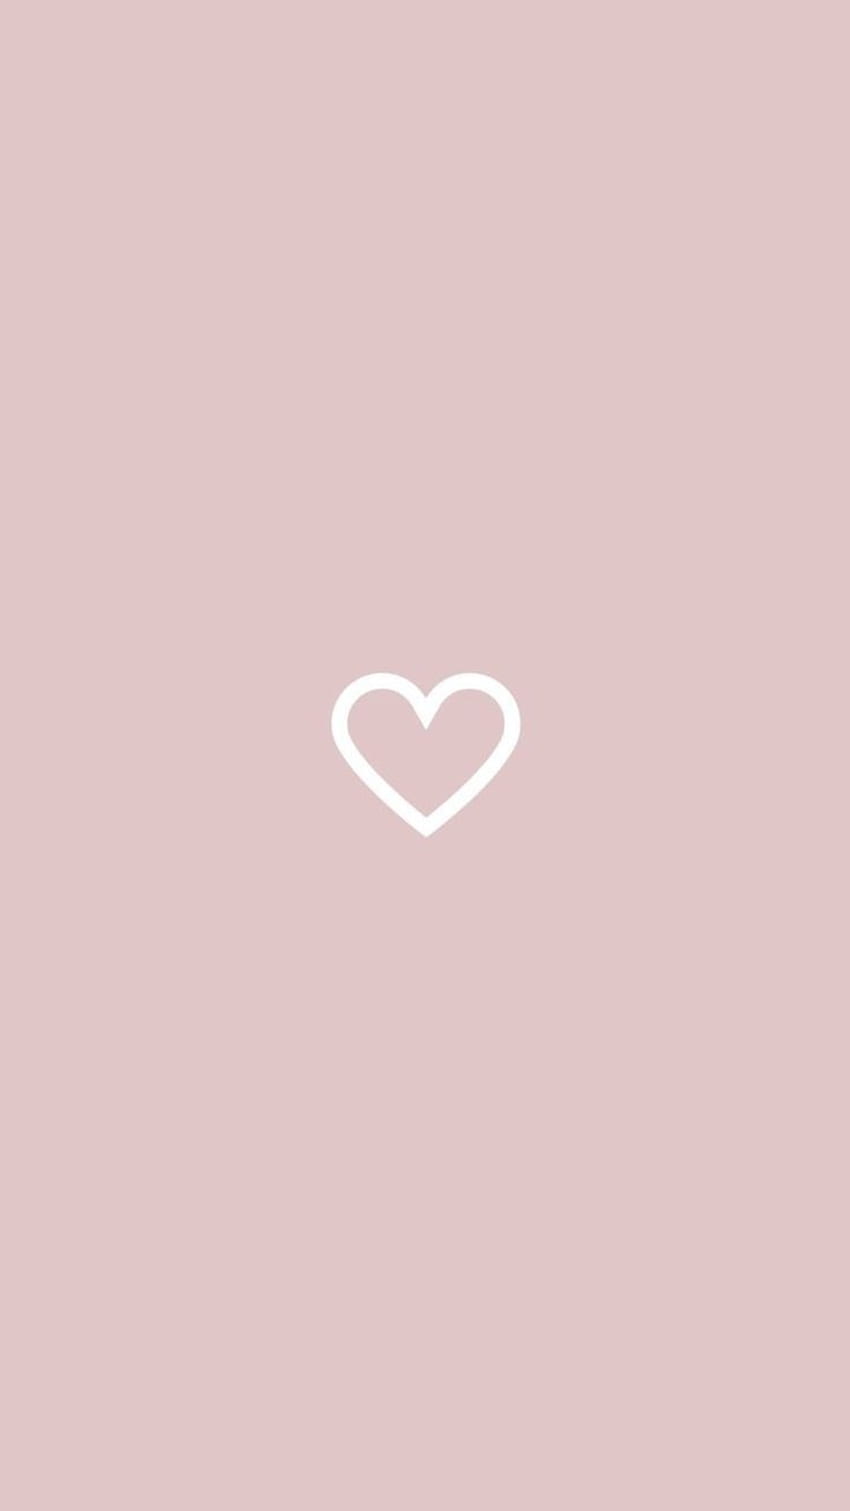 Heart, love, ily, sweet, cute, doodle HD phone wallpaper | Pxfuel